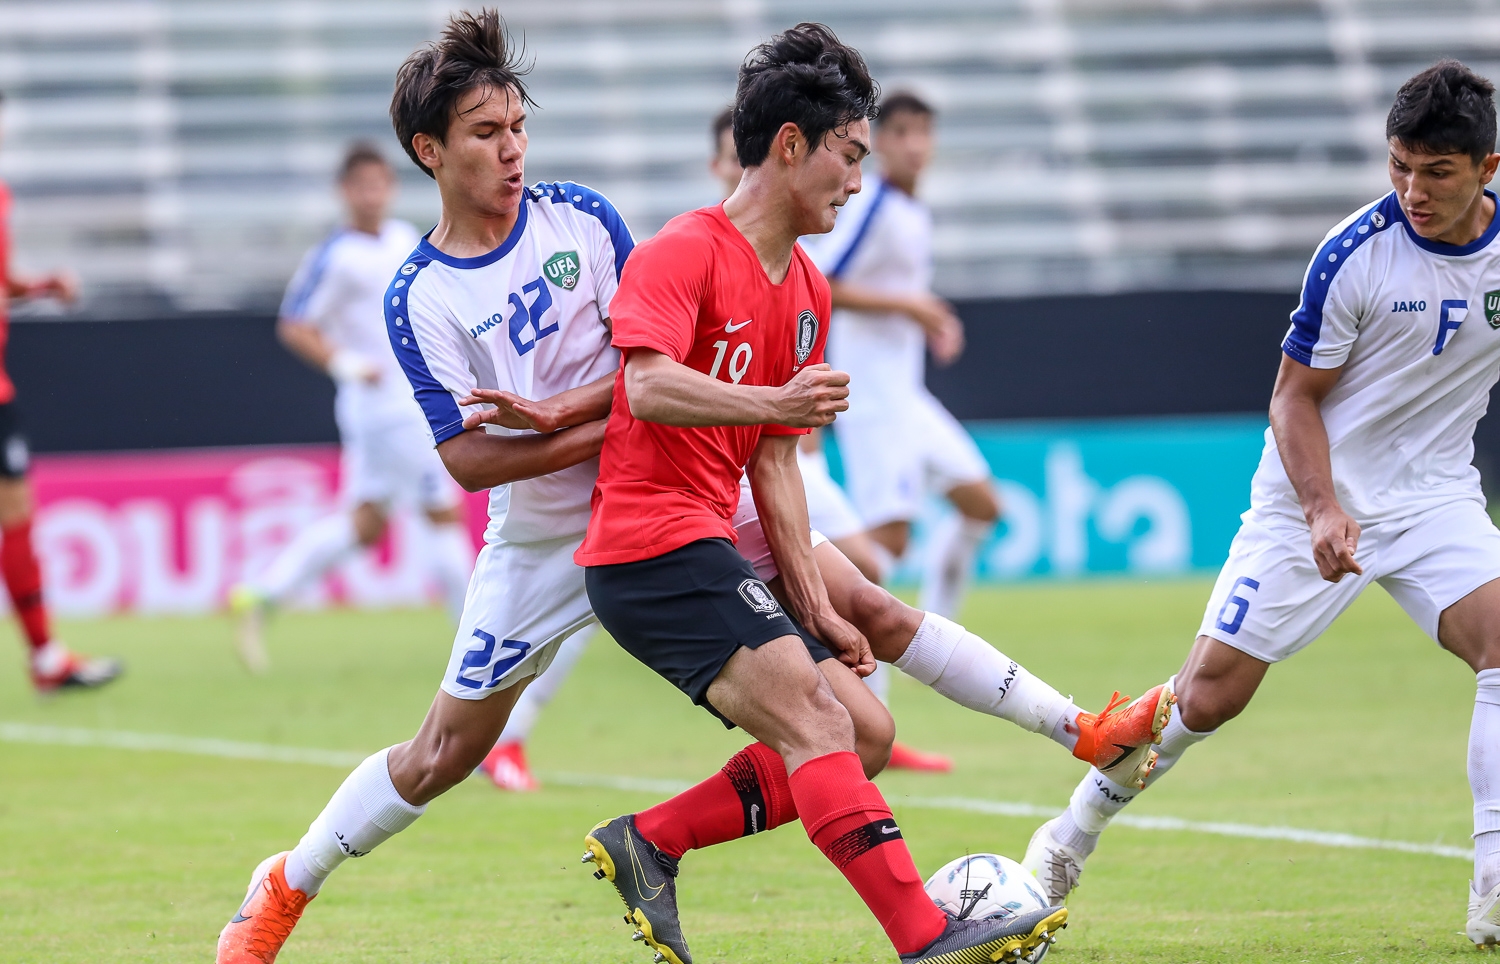 U19 Thái Lan tiếp tục bị U19 Uzbekistan đánh bại trong trận tranh hạng 3 GBS Bangkok Cup 2019